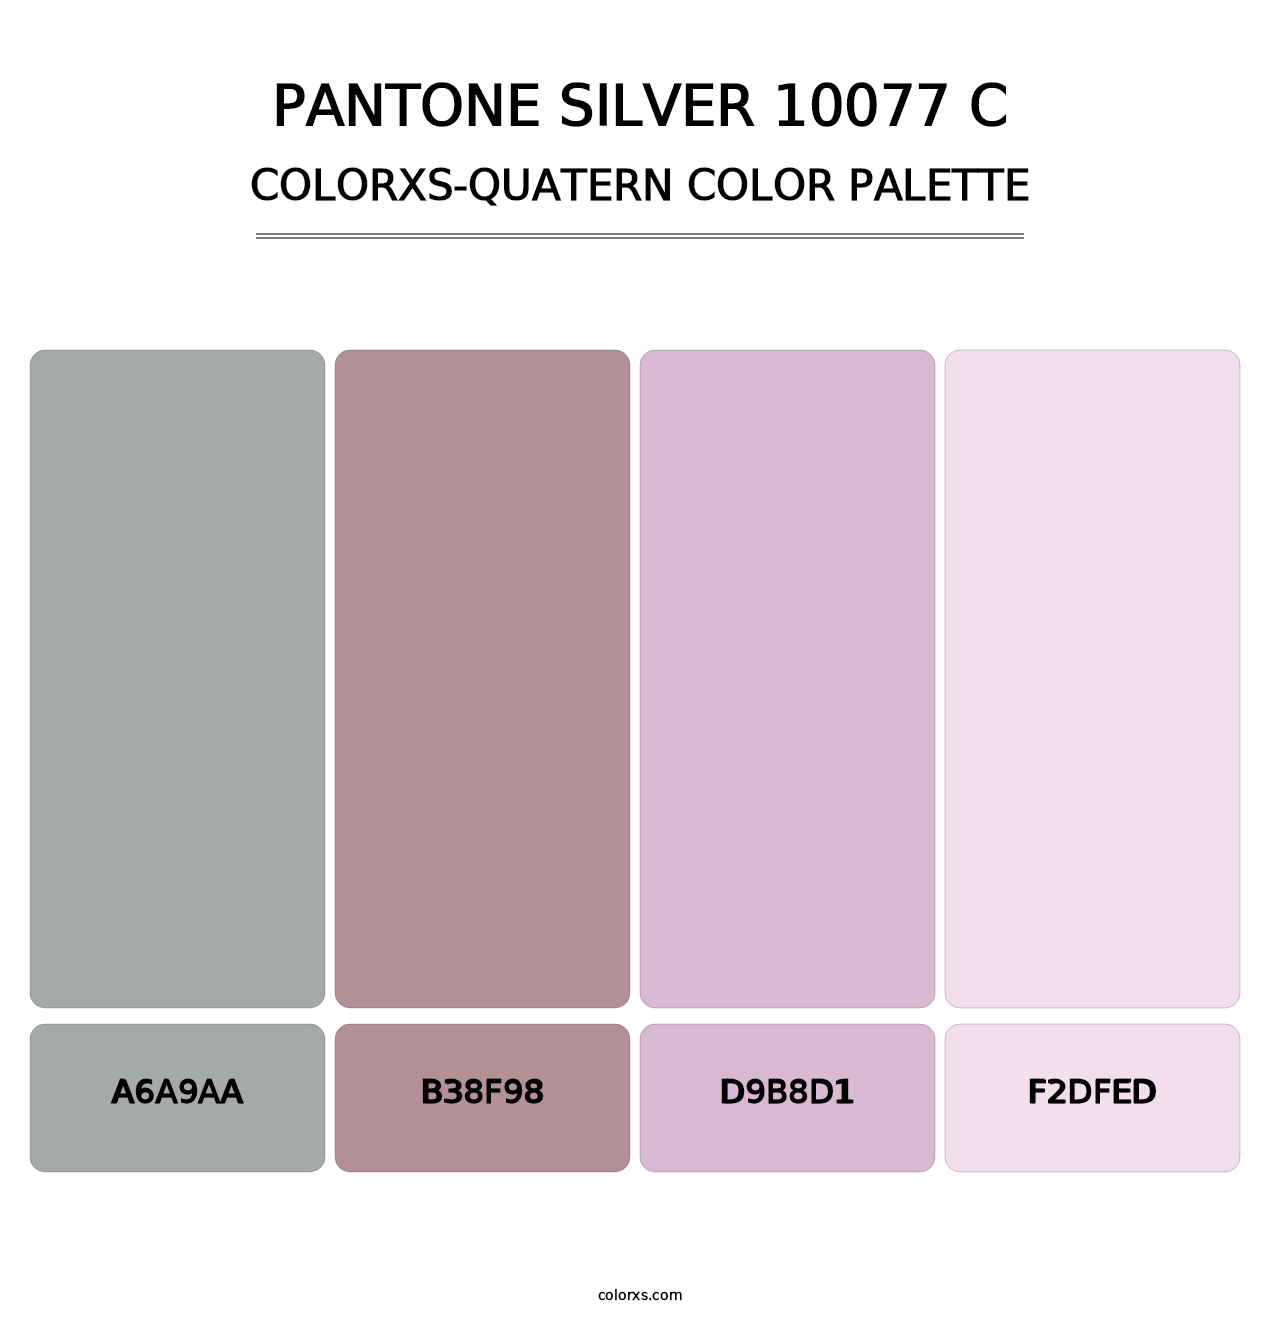 PANTONE Silver 10077 C - Colorxs Quatern Palette